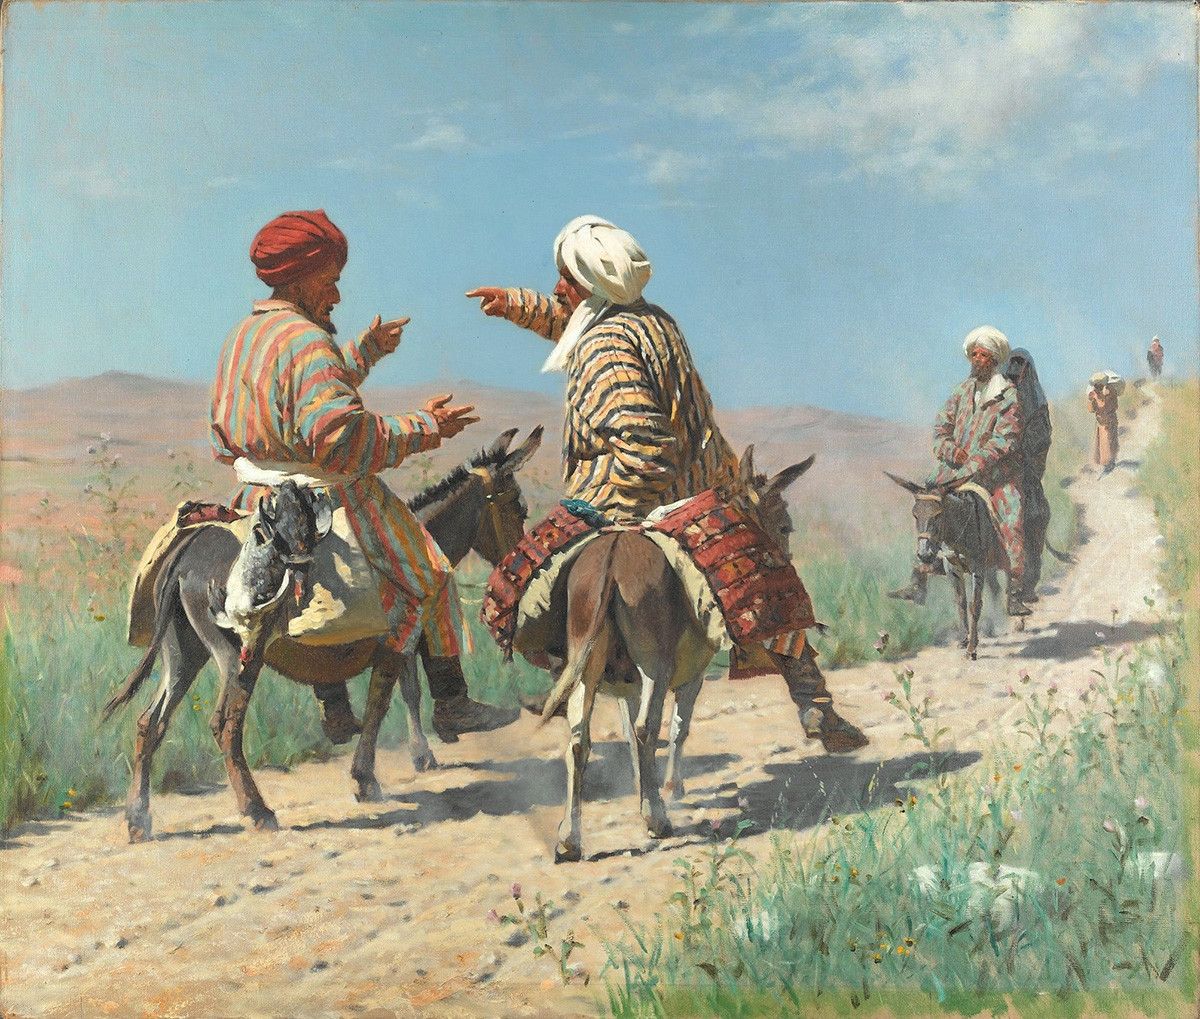 バザールへの道で喧嘩するムッラー・ラヒムとムッラー・ケリム、1873年